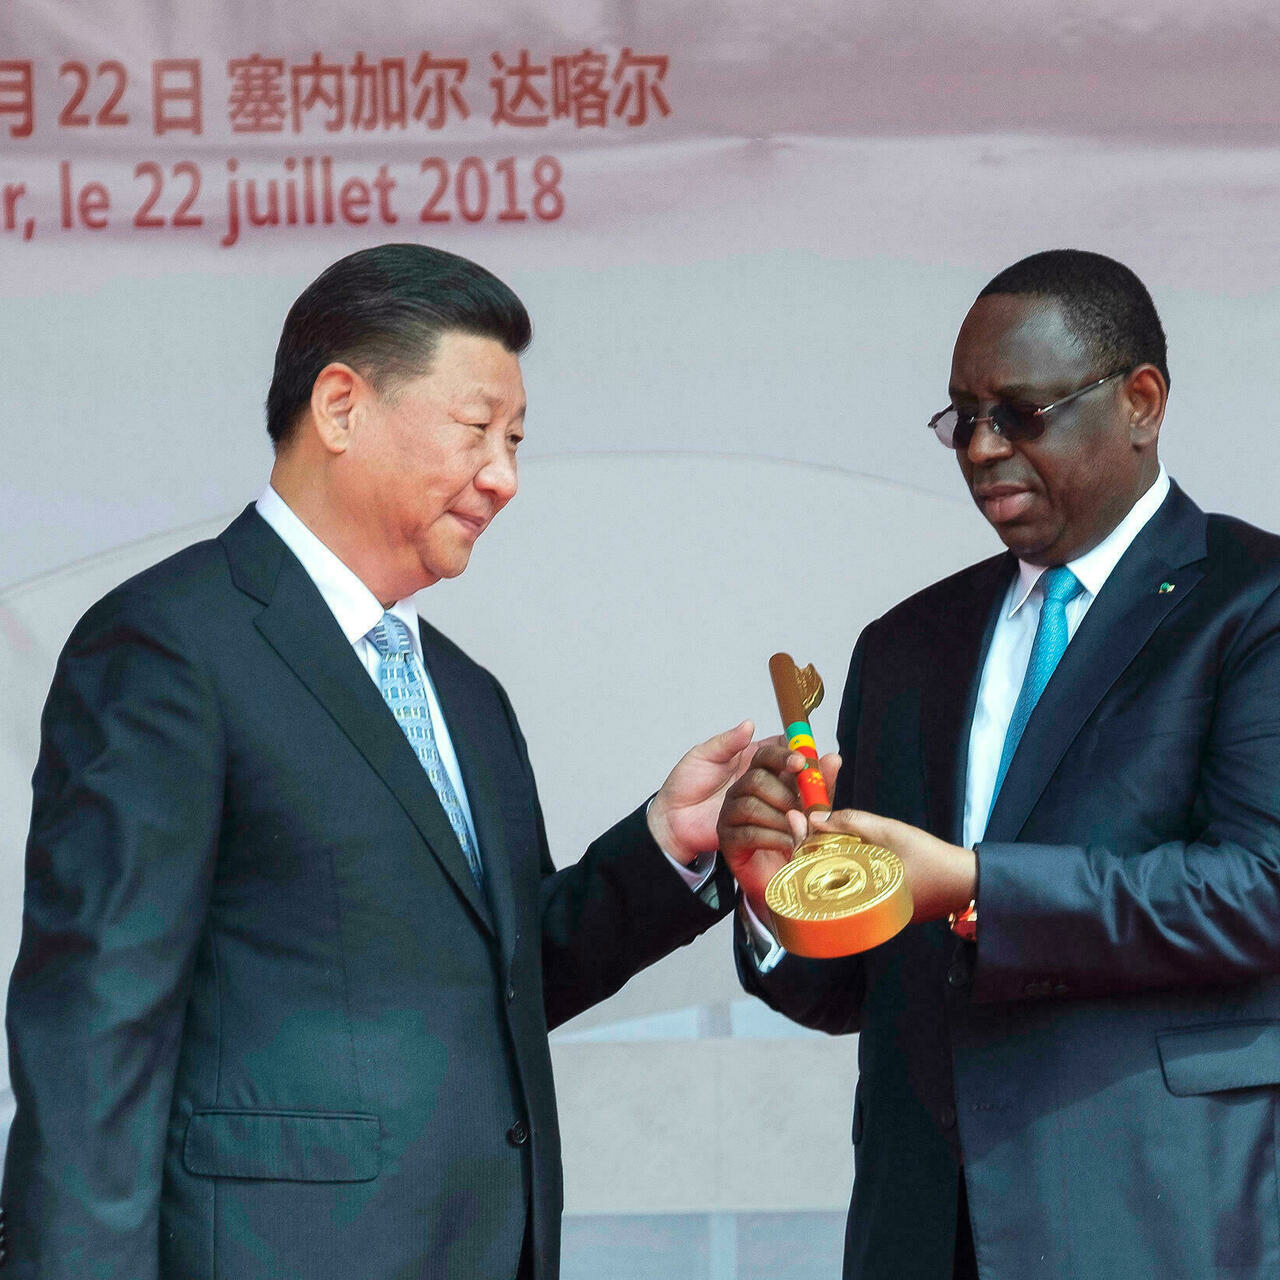 FORUM CHINE-AFRIQUE  Les gouvernants africains demandent une relation plus équilibrée